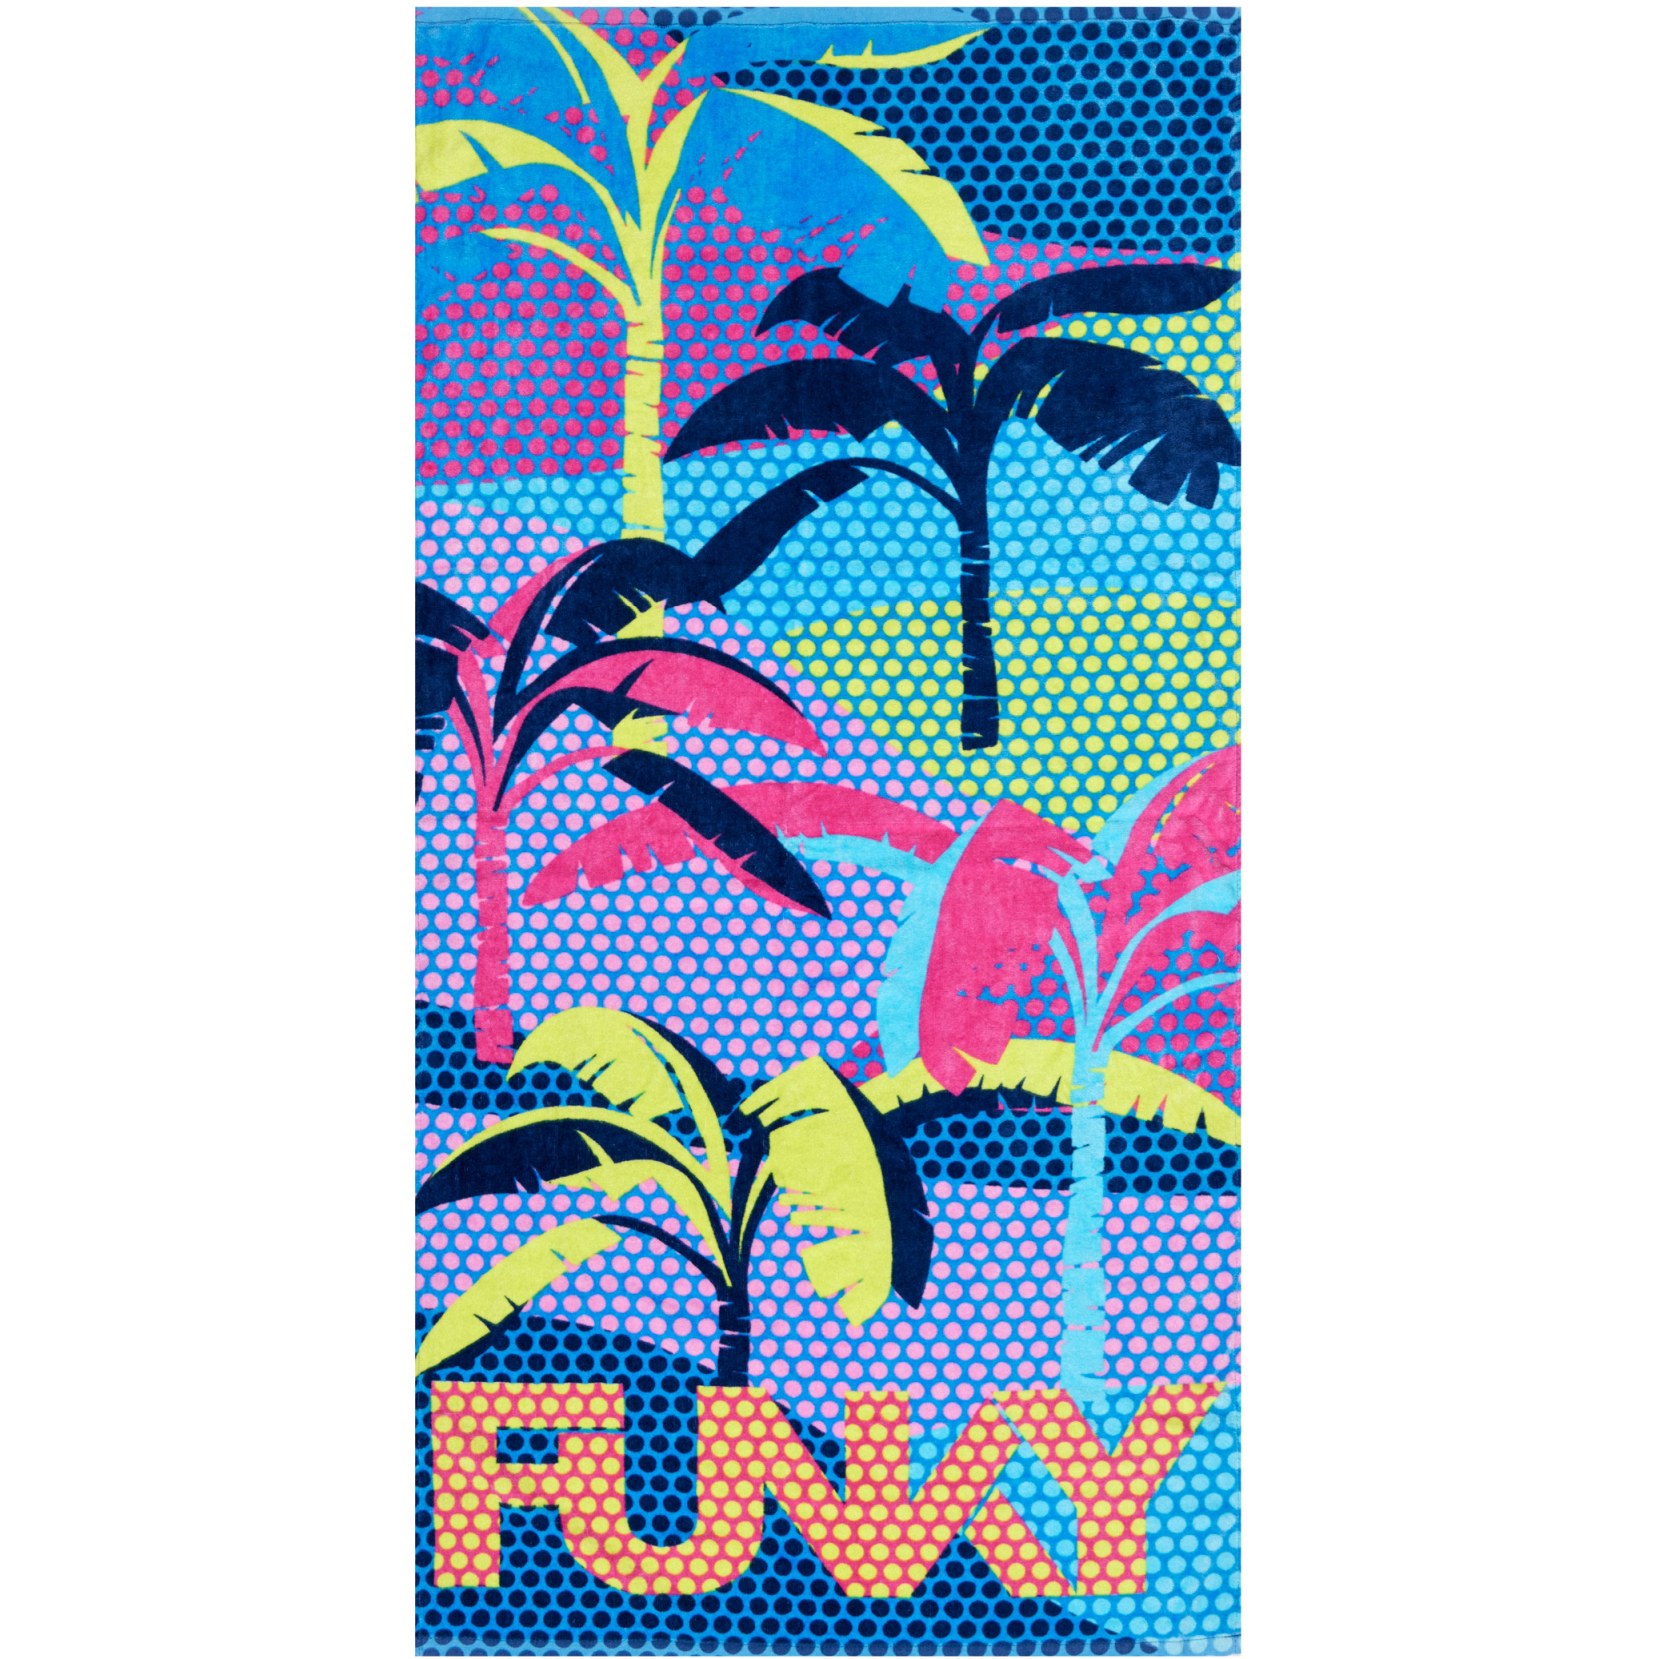 Produktbild von Funky Trunks Baumwoll Handtuch - Palm A Lot